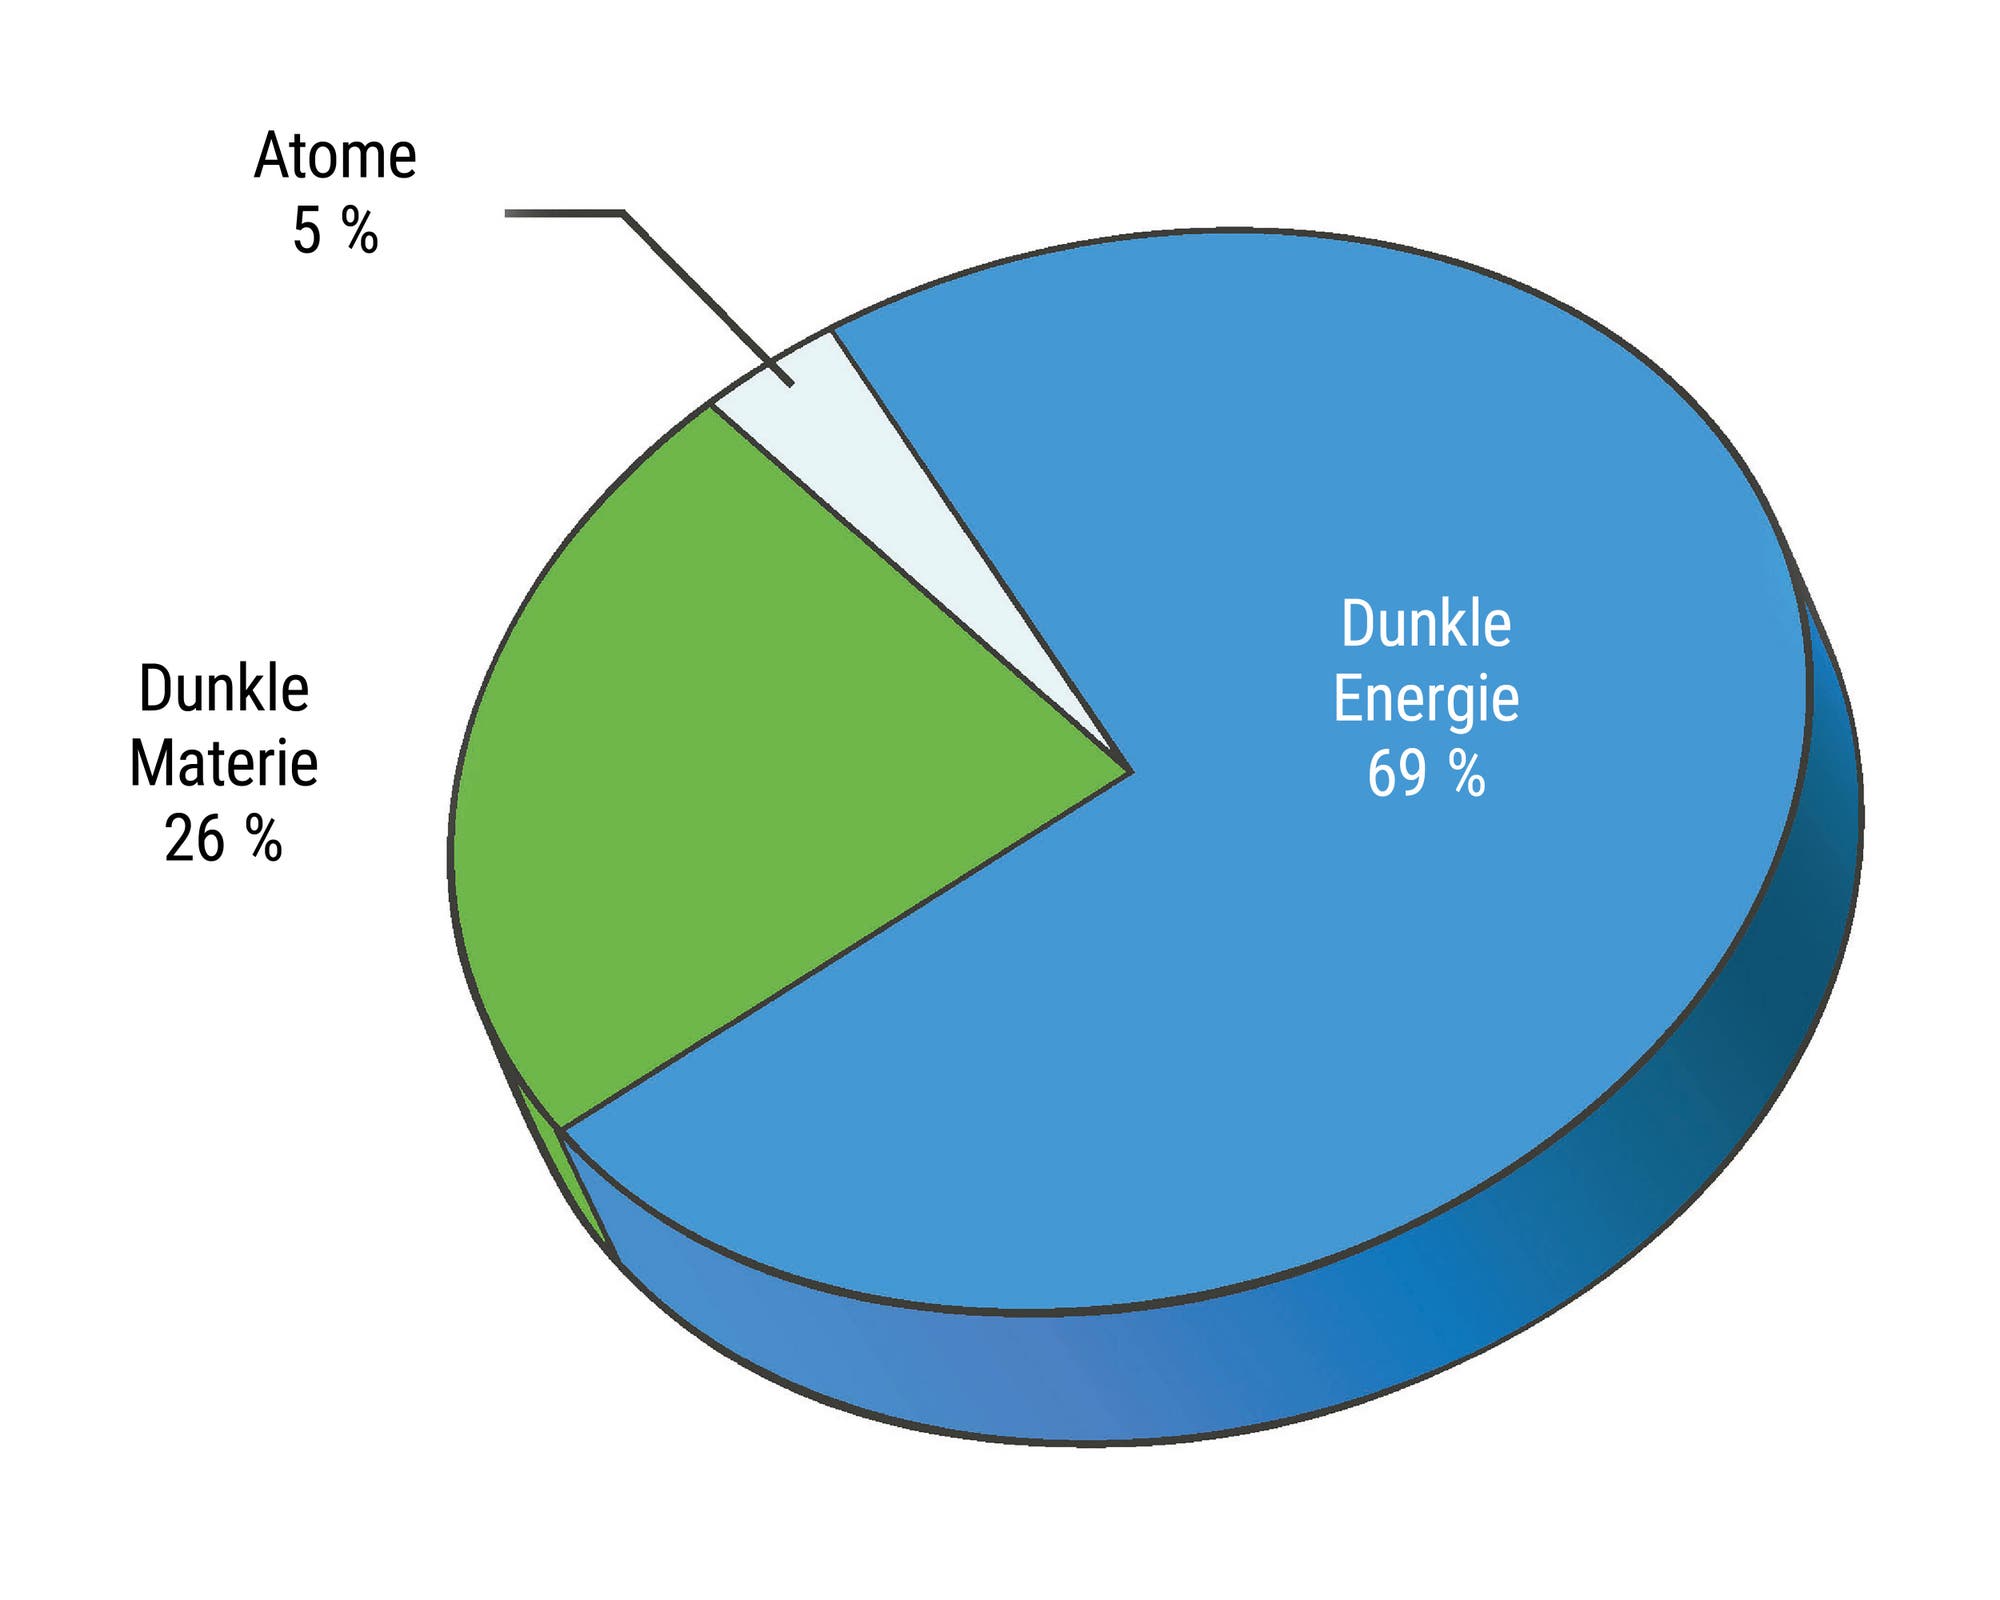 Tortendiagramm in blau/grün: Anteil Dunkler Energie 69 %, Dunkle Marterie 26 % und  Atome 5 %.